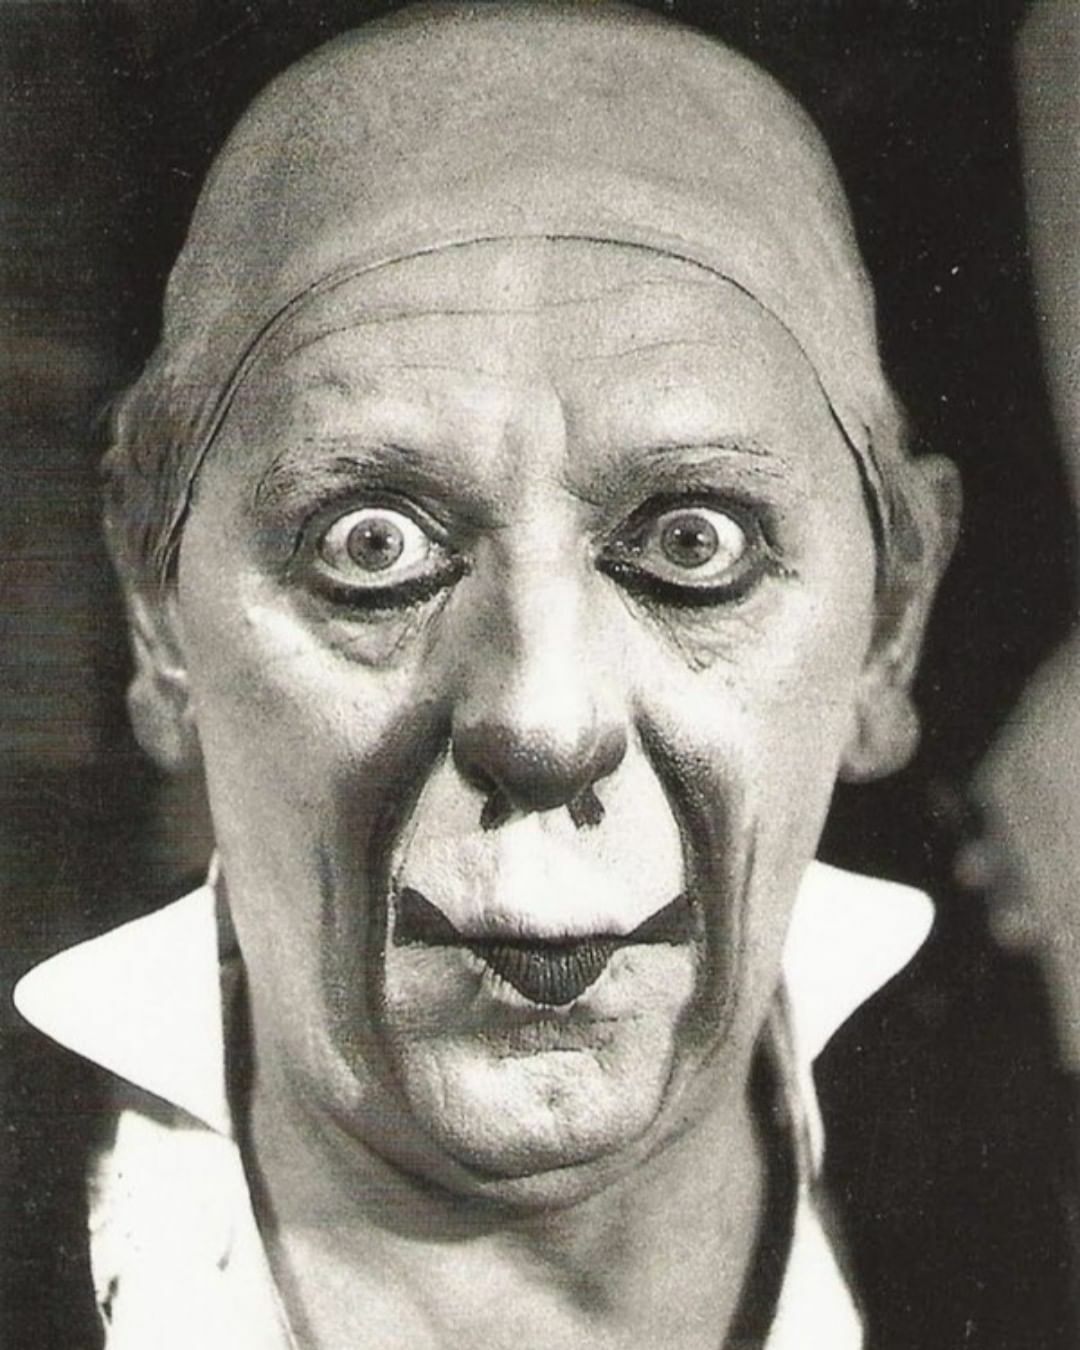 Le photographe gotthard schuh a pris cette photo d’un clown en 1936.